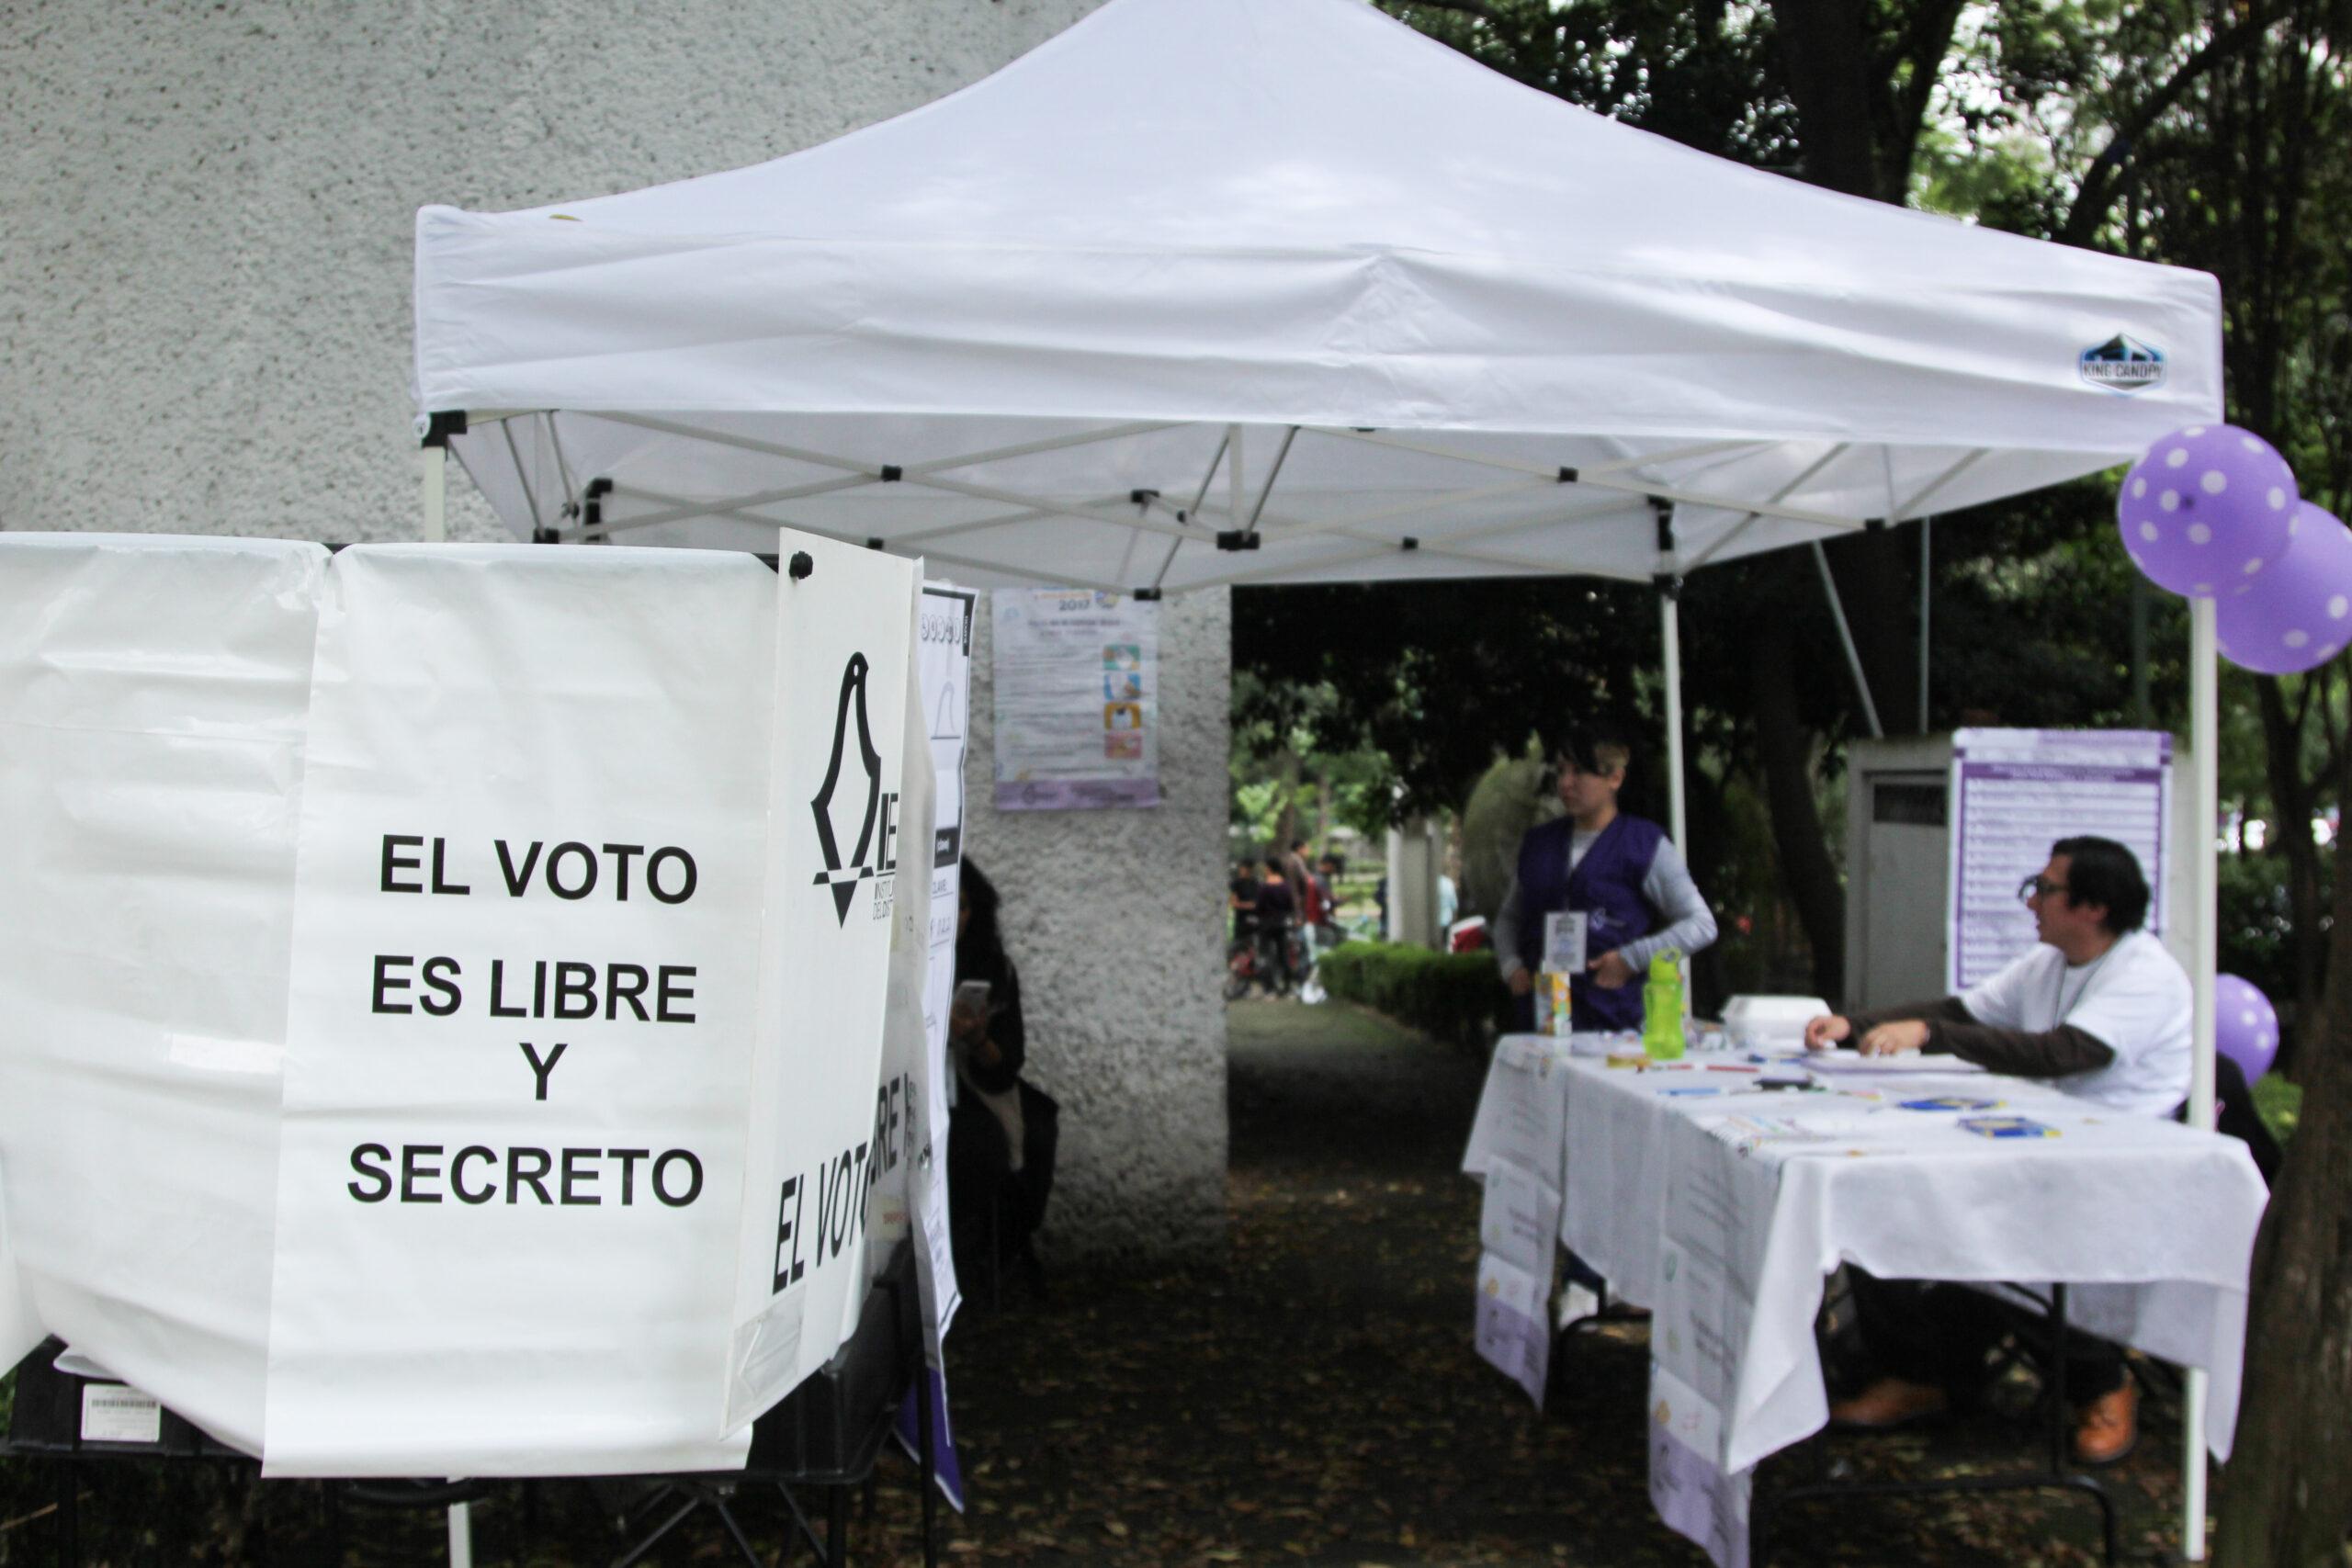 El 98% de los mexicanos no confía en el actual gobierno, ni cree en la democracia: estudio